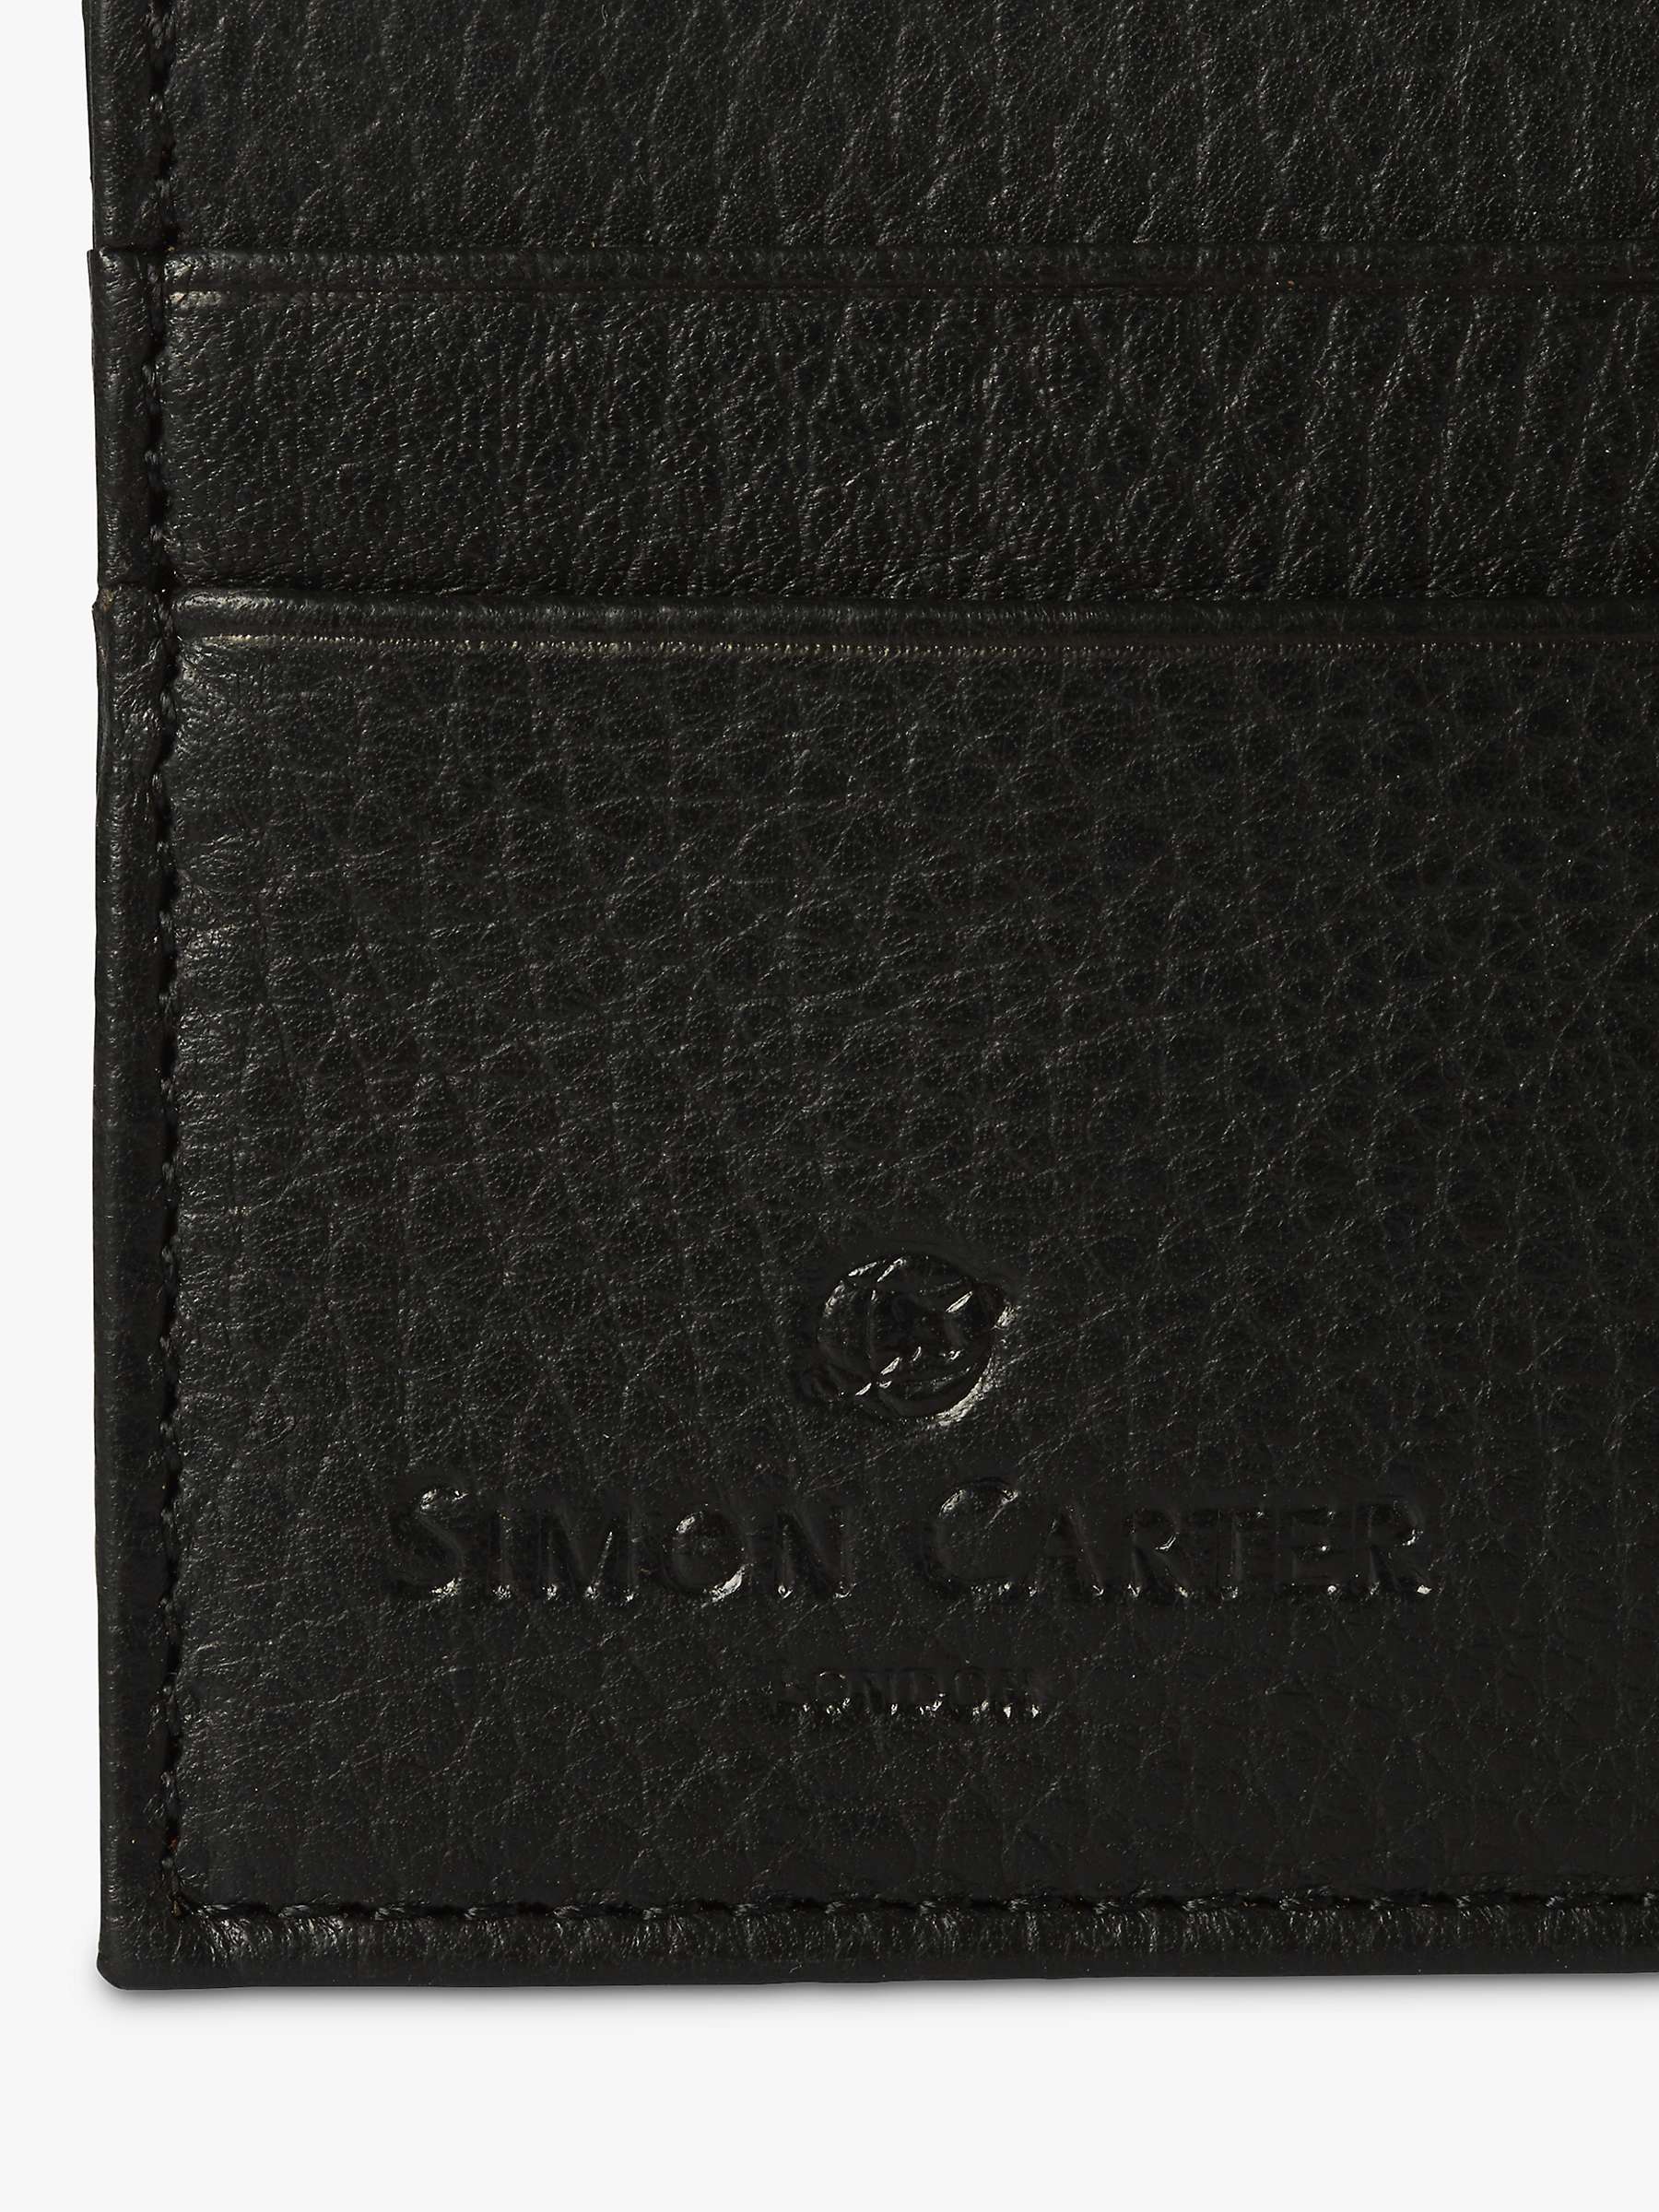 Buy Simon Carter West End Leather Credit Card Holder, Black Online at johnlewis.com